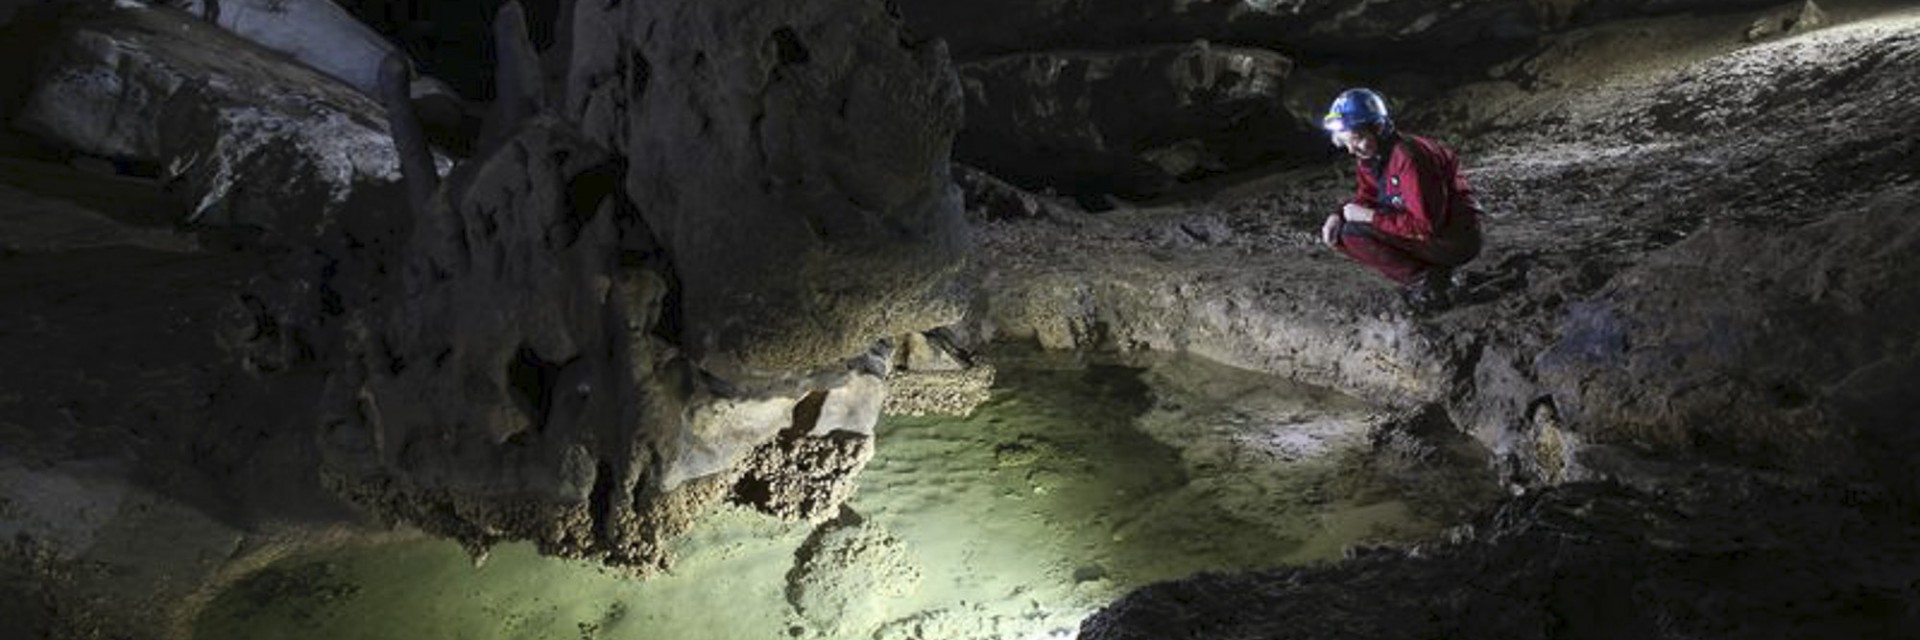 Chiapas grotta